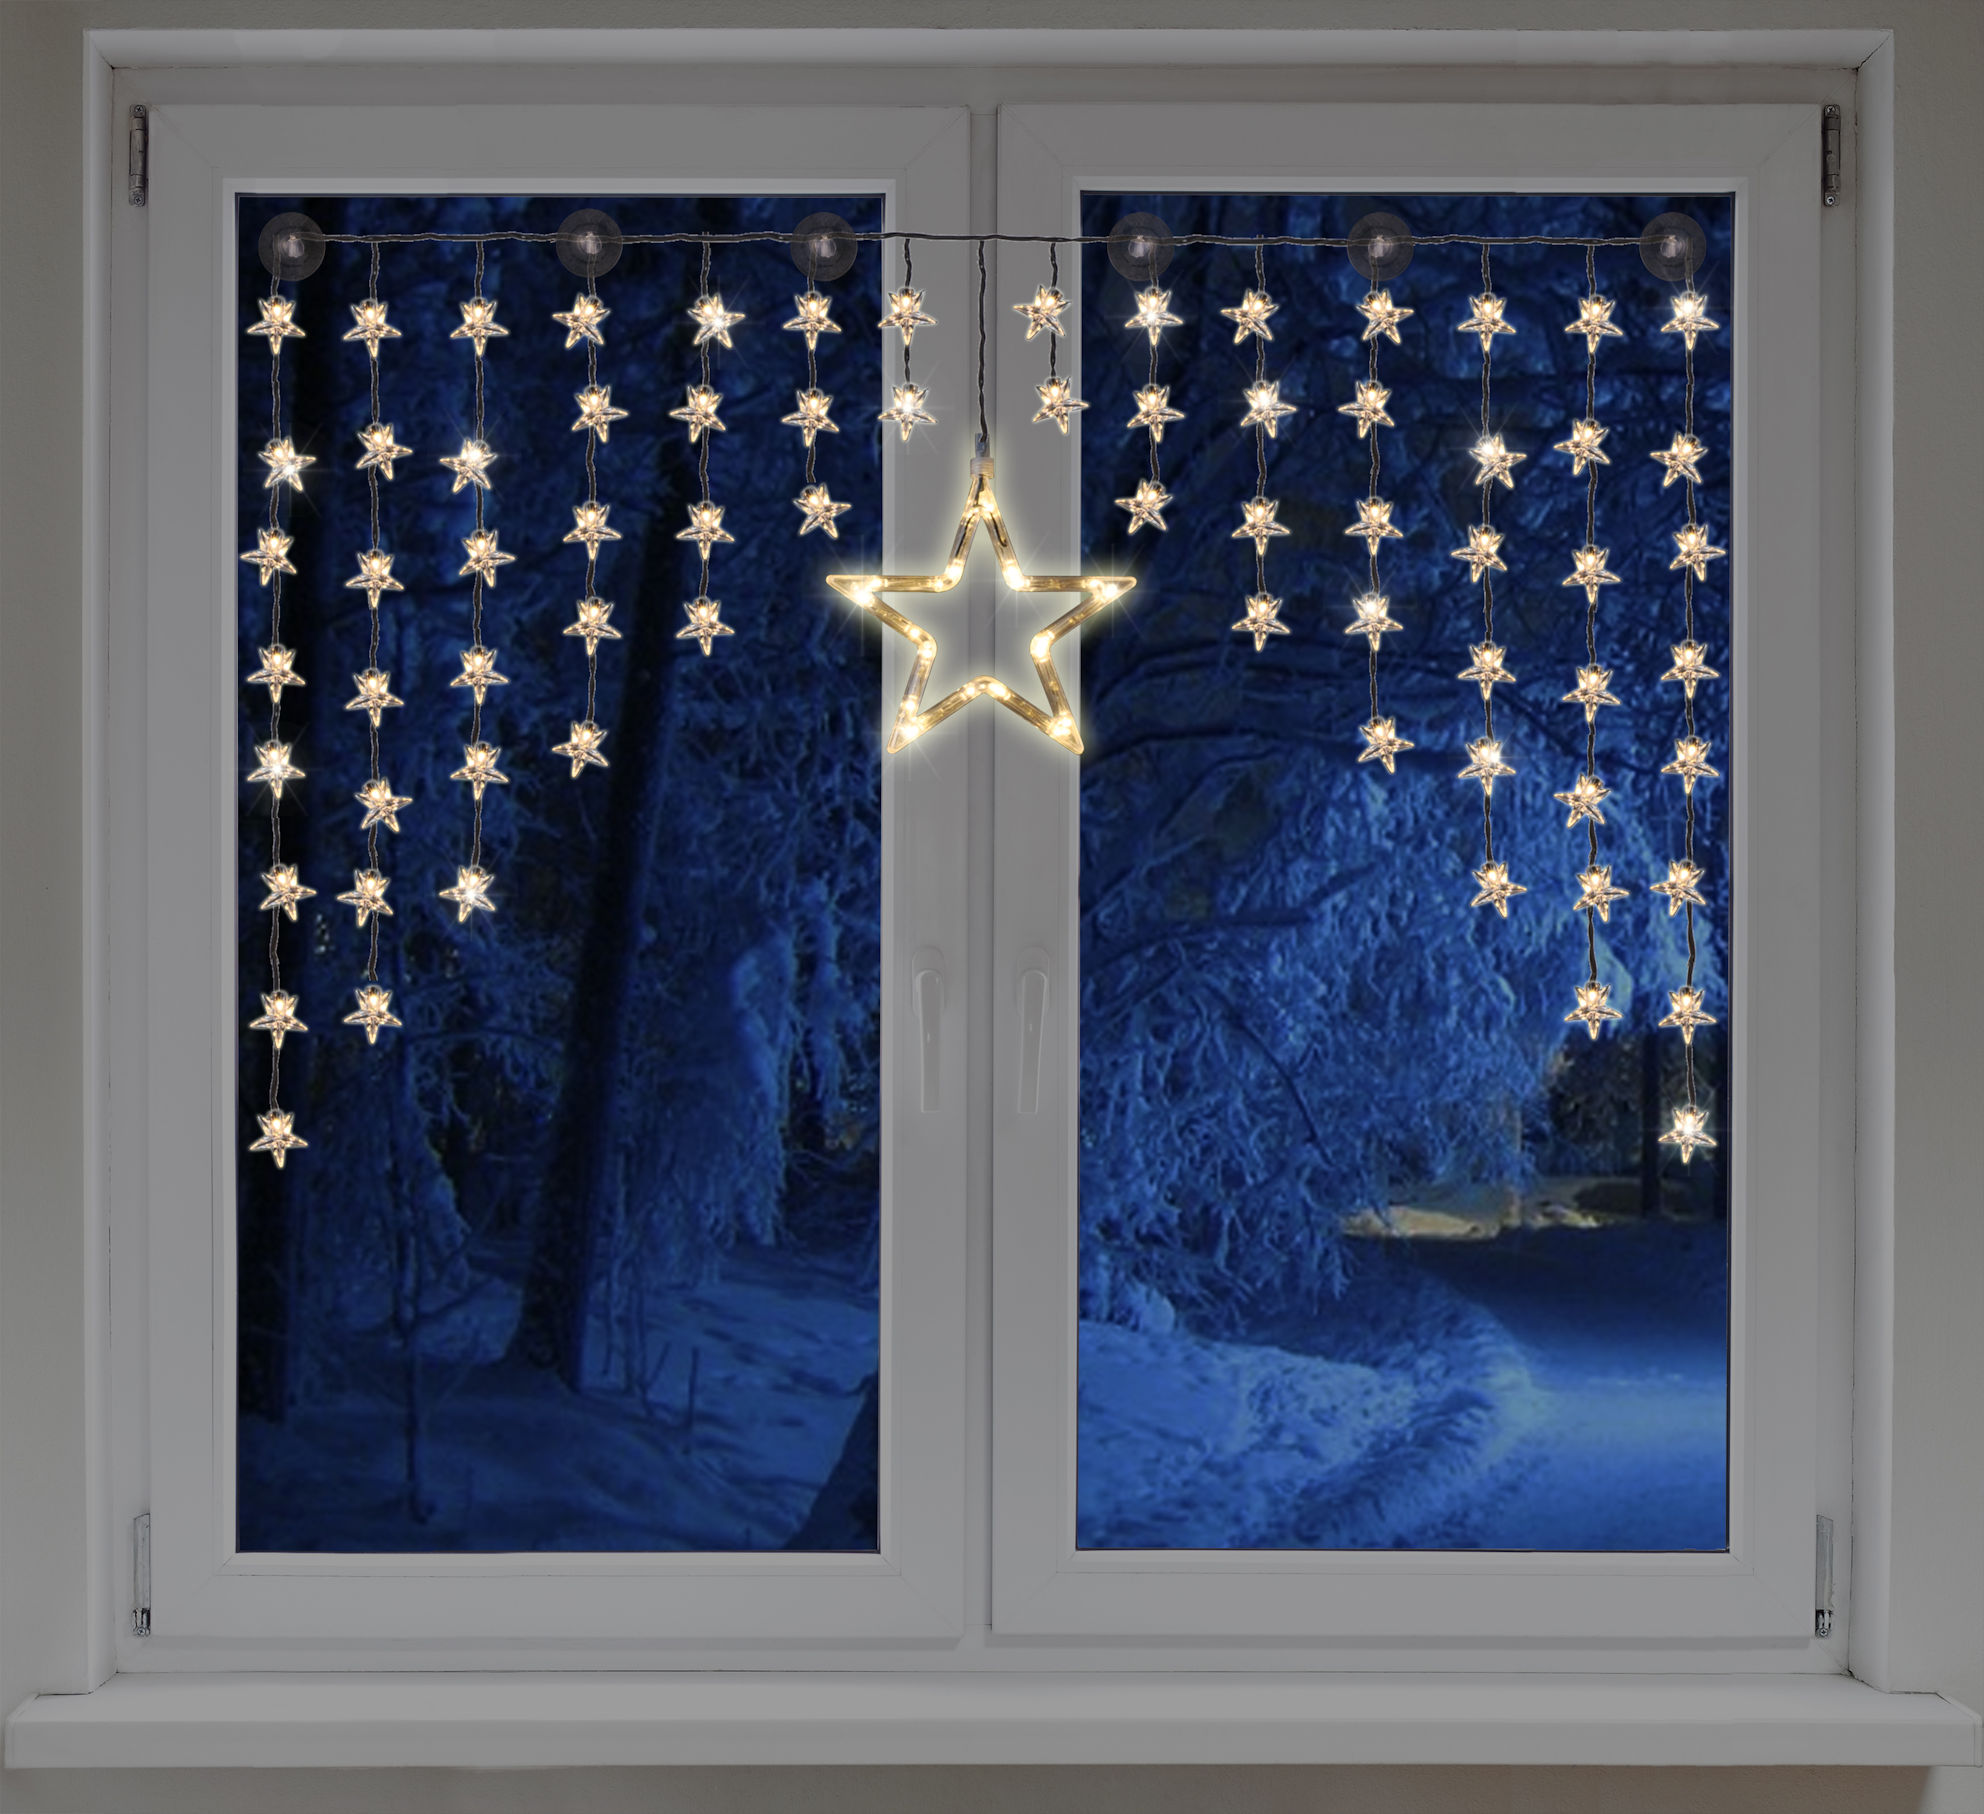 LED Sternenvorhang, Fenster Deko, Stern Lichterkette, mit 90 warmweißen Lichtern, Die Größe beträgt ca. 140 cm x 95 cm, Material: Kunststoff, Sternenvorhang mit 90 LEDs, Leuchtfarbe: warmweiß, 1 großer Stern (20 LEDs) und 70 kleine Sterne (jeweils 1 LED),